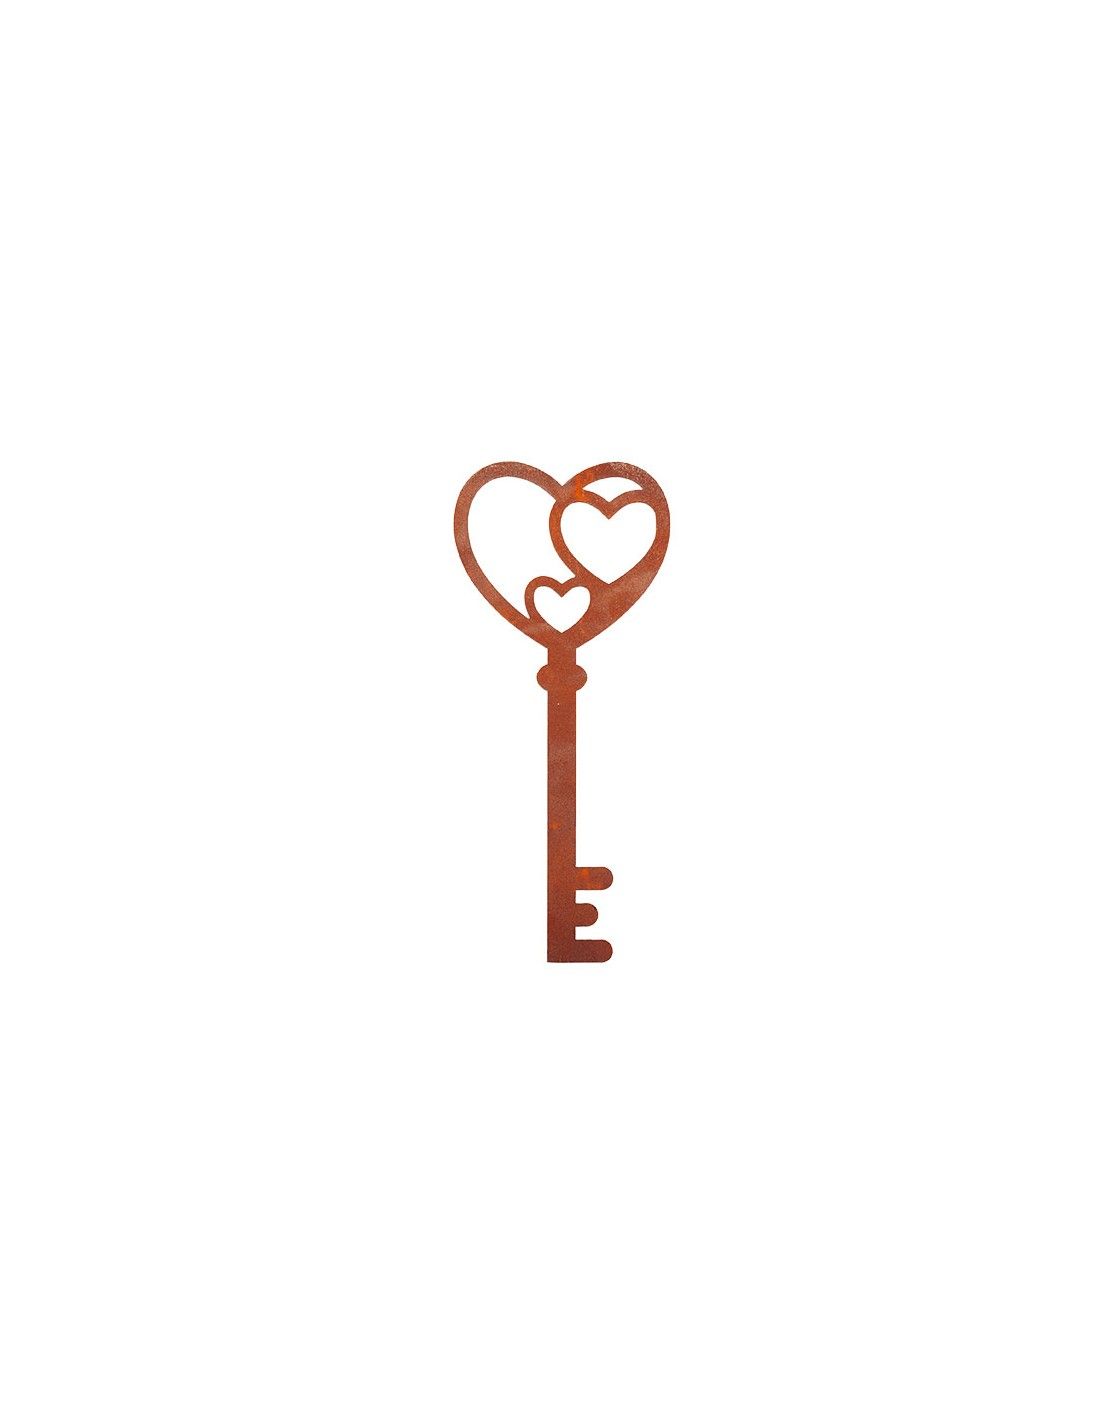 Deko Schlüssel aus Metall - Herz - Höhe 18 cm